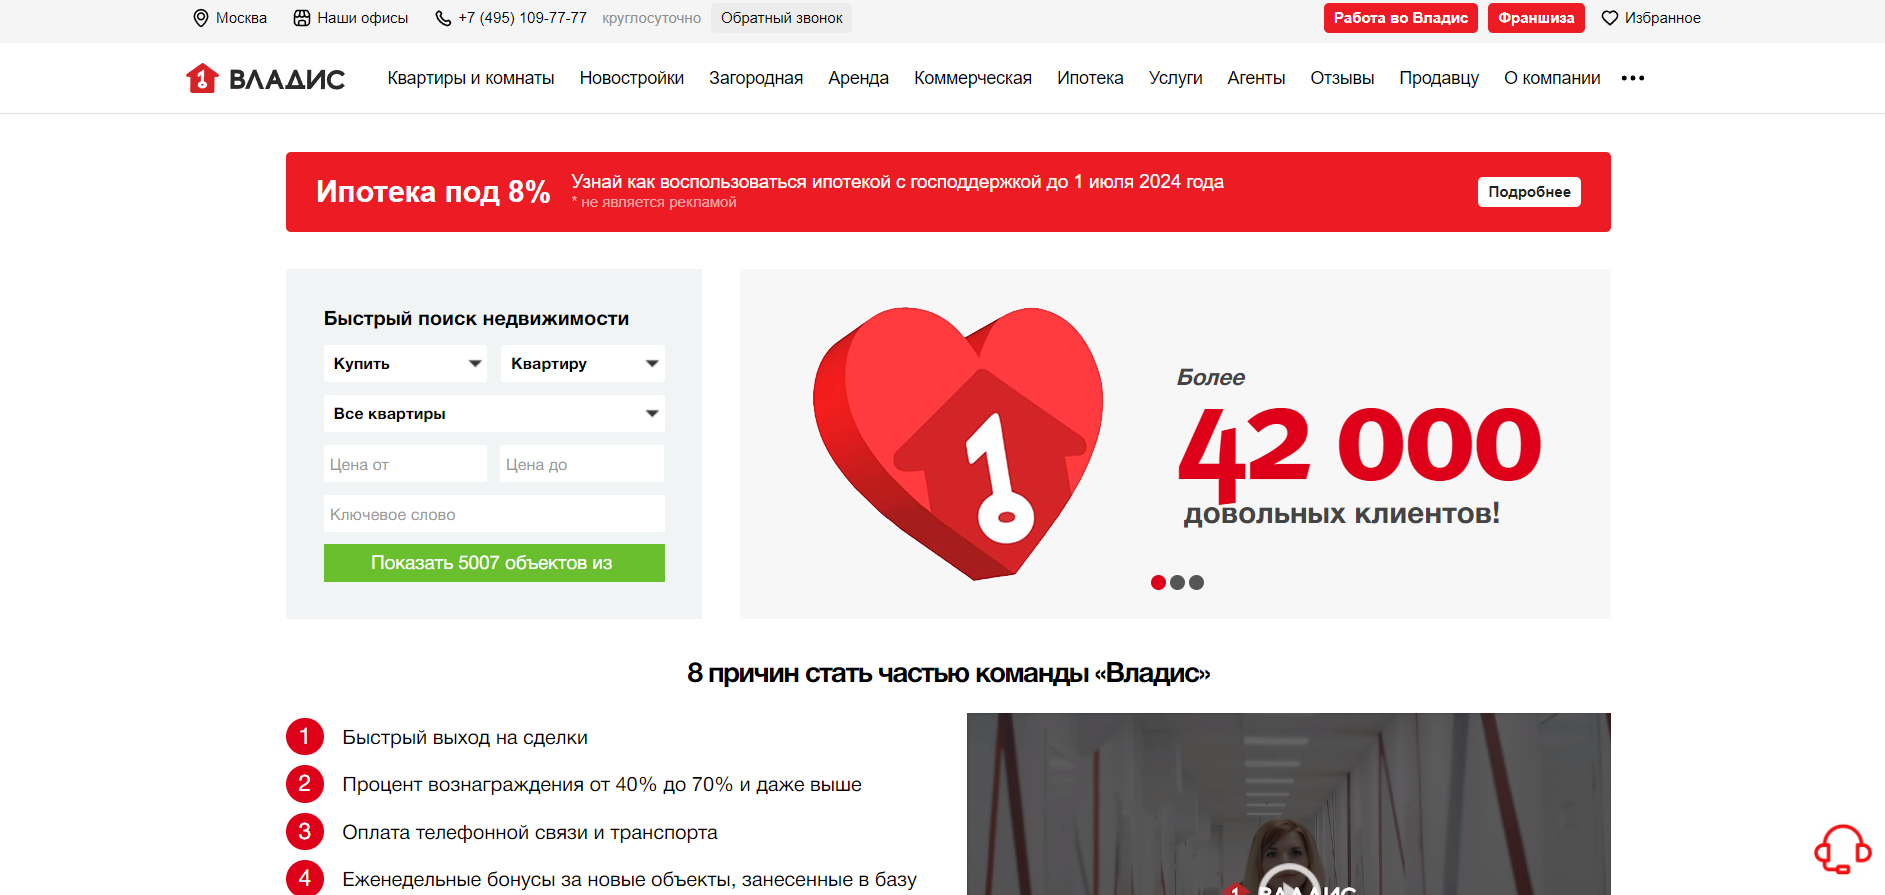 Осторожно: негативный опыт с агентством недвижимости «Владис» в Москве